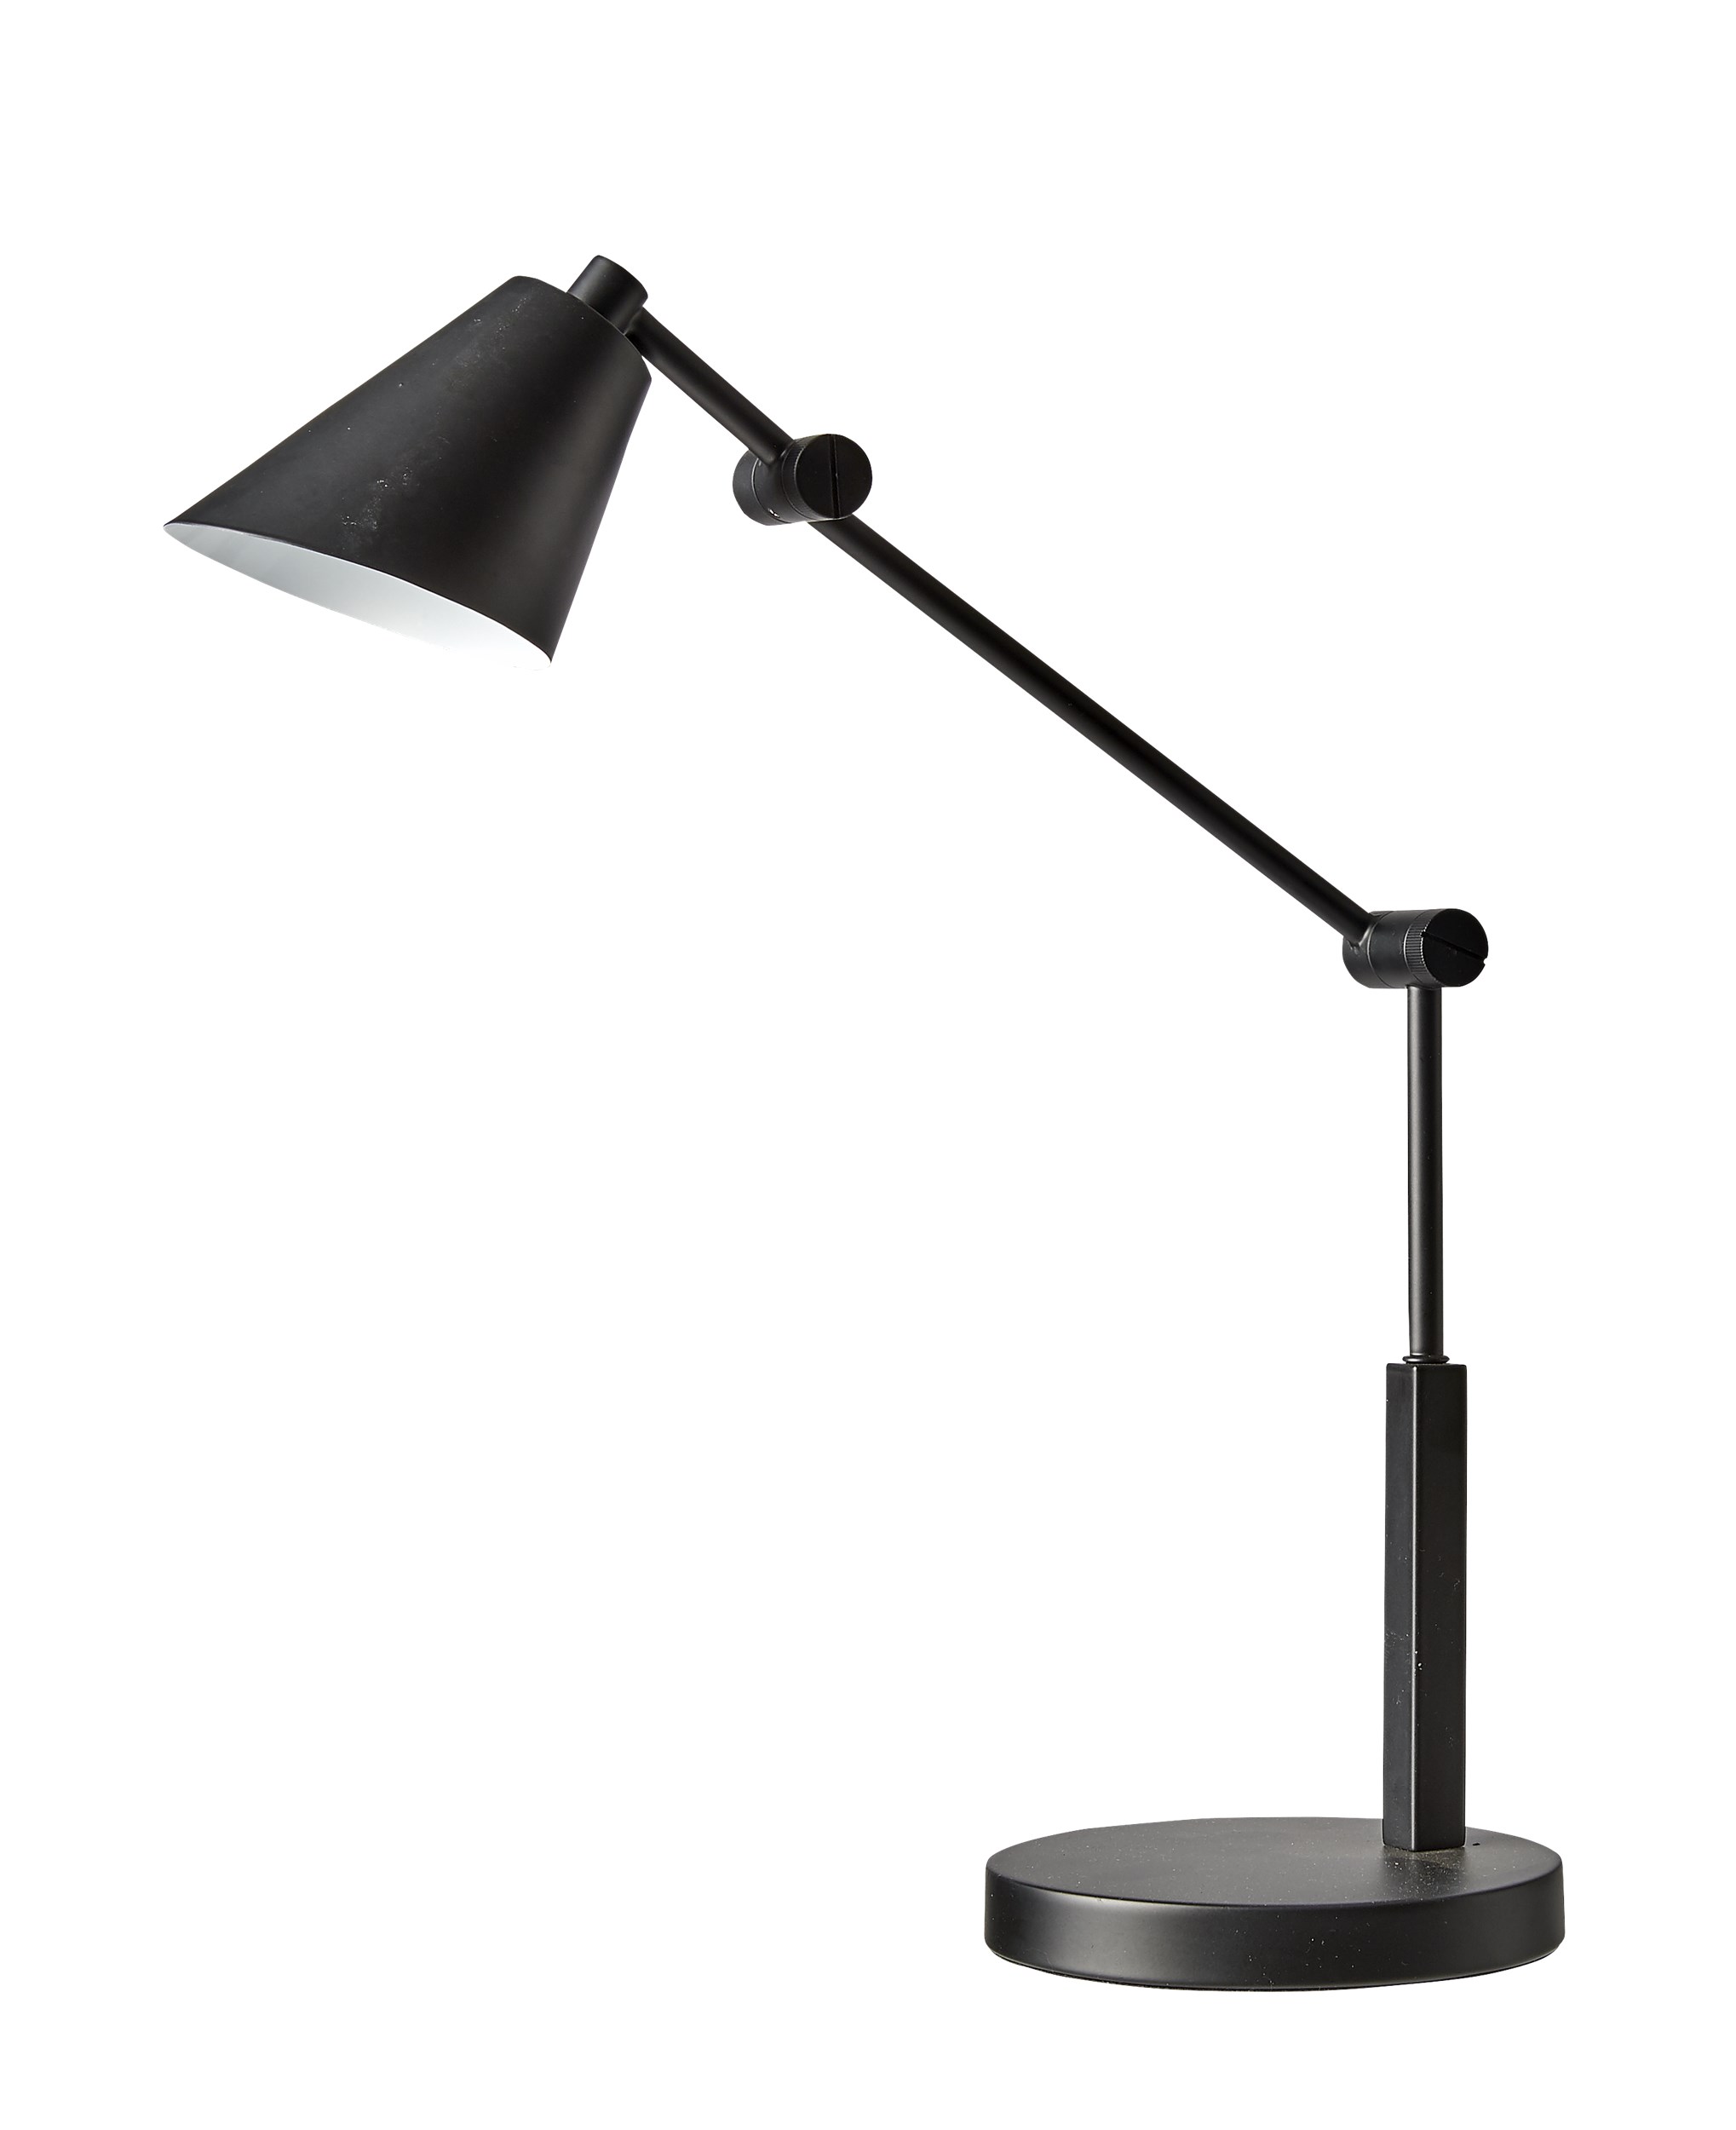 Chili Bordslampa 55 x 11 cm - Svart metallskärm och bas och svart textilsladd